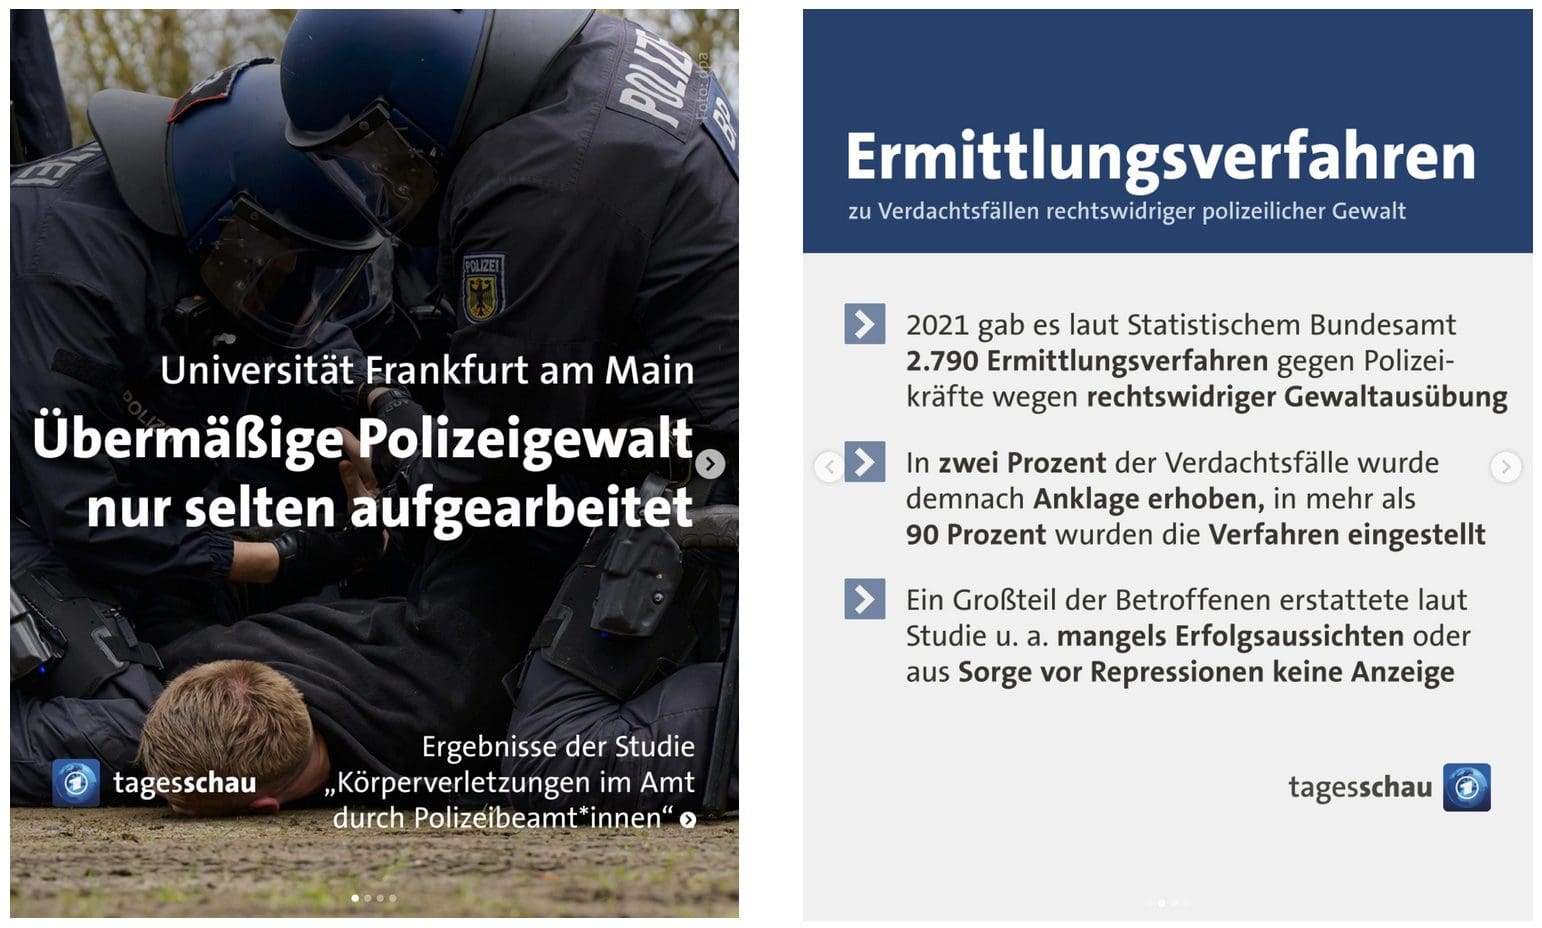 polizeigewalt-in-deutschland-liegt-2021-offiziell-bei-2790-faellen-dunkelziffer-hoch-bei-nur-2-prozent-wurde-anklage-erhoben